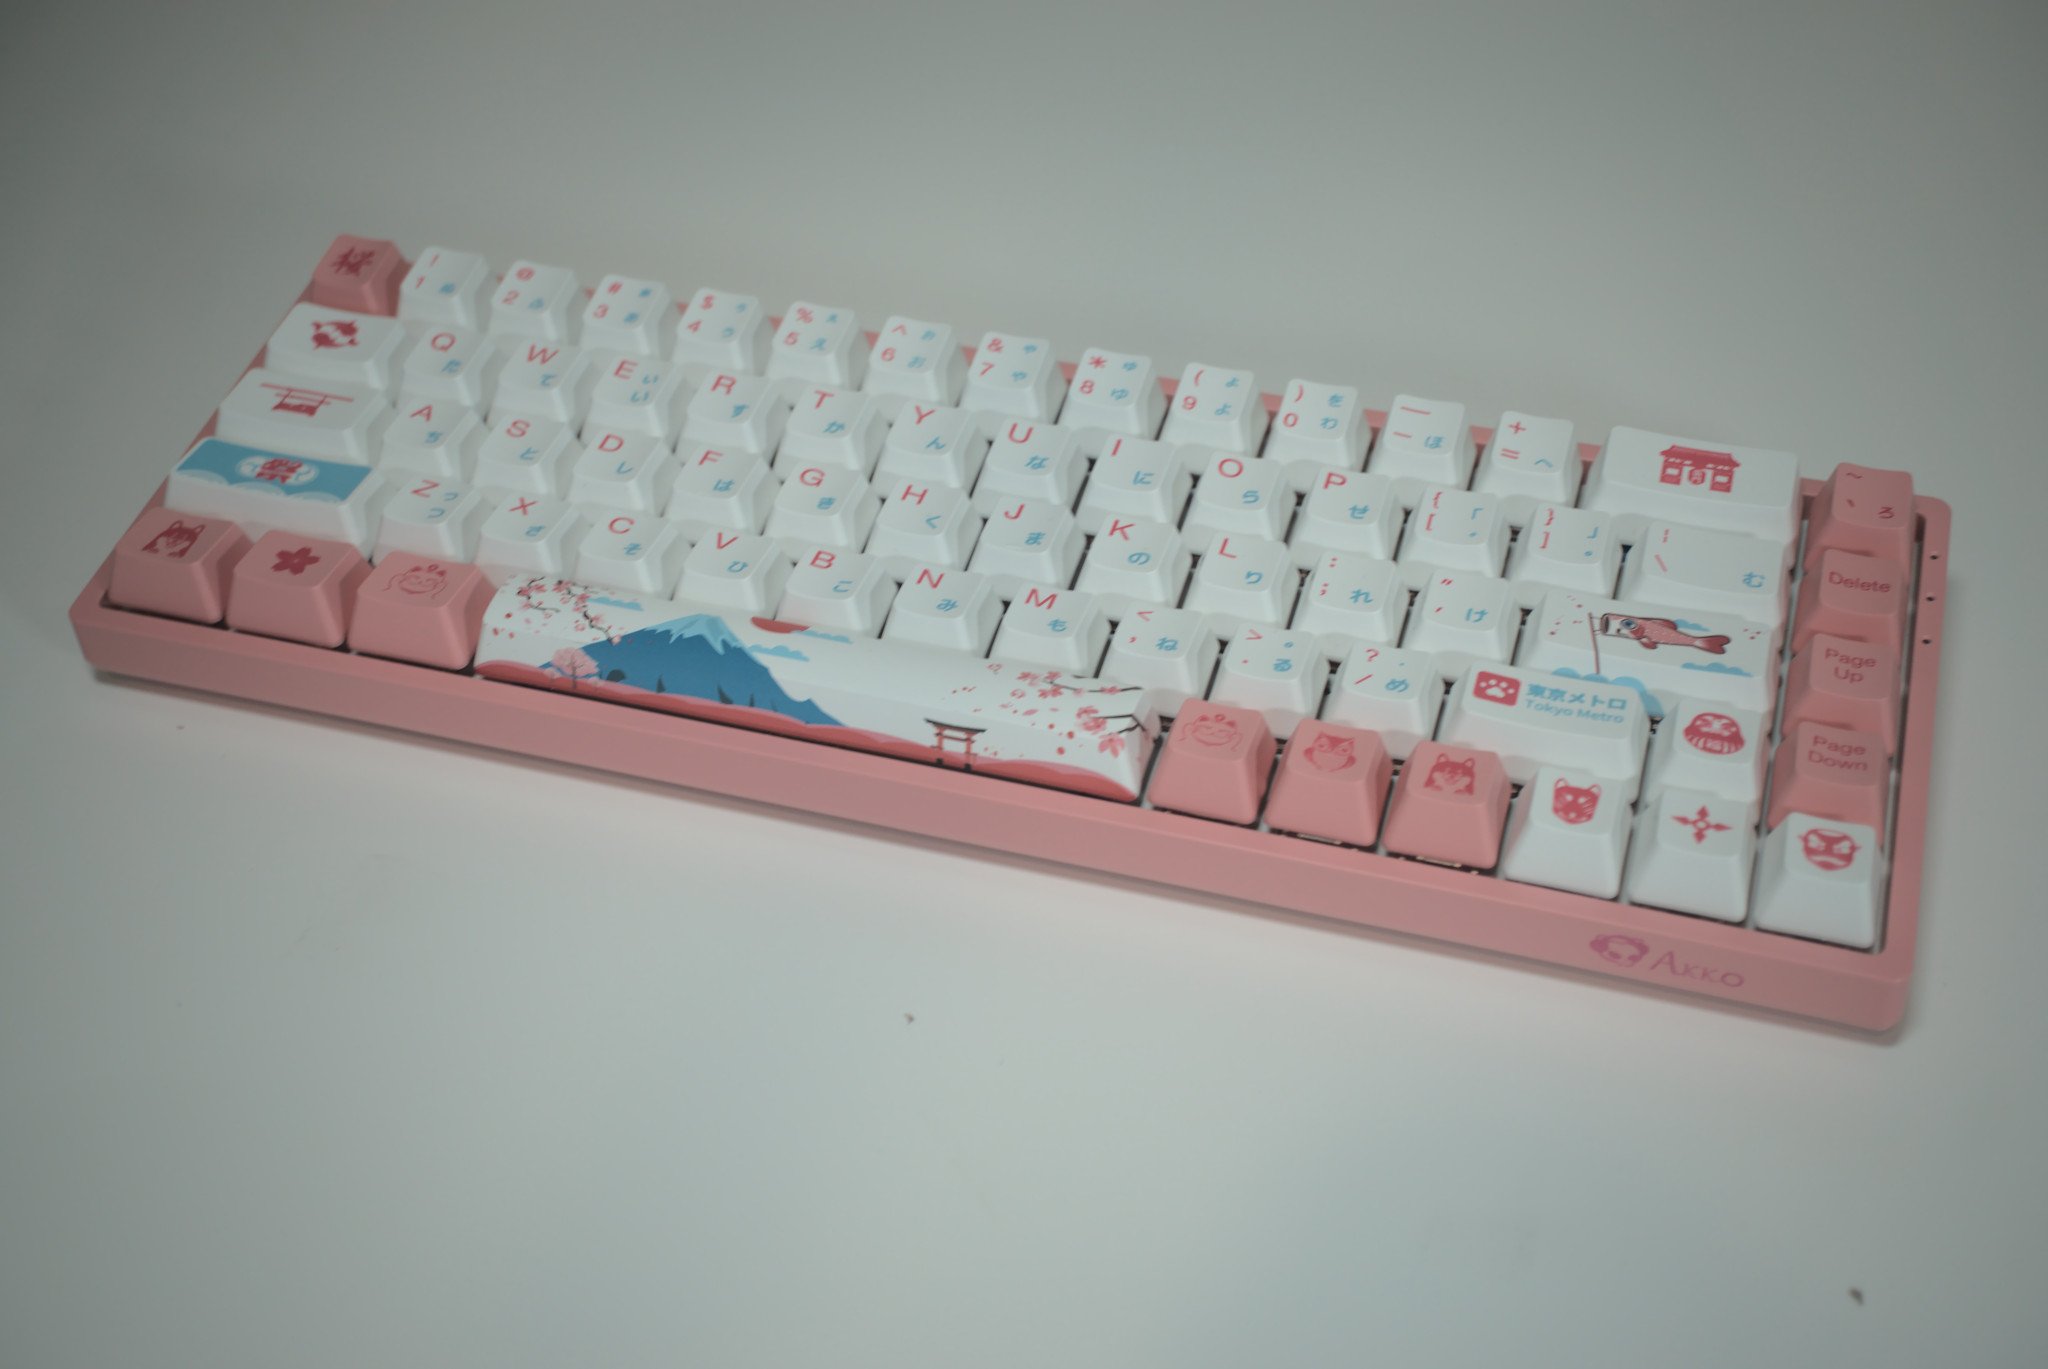 Akko keyboard